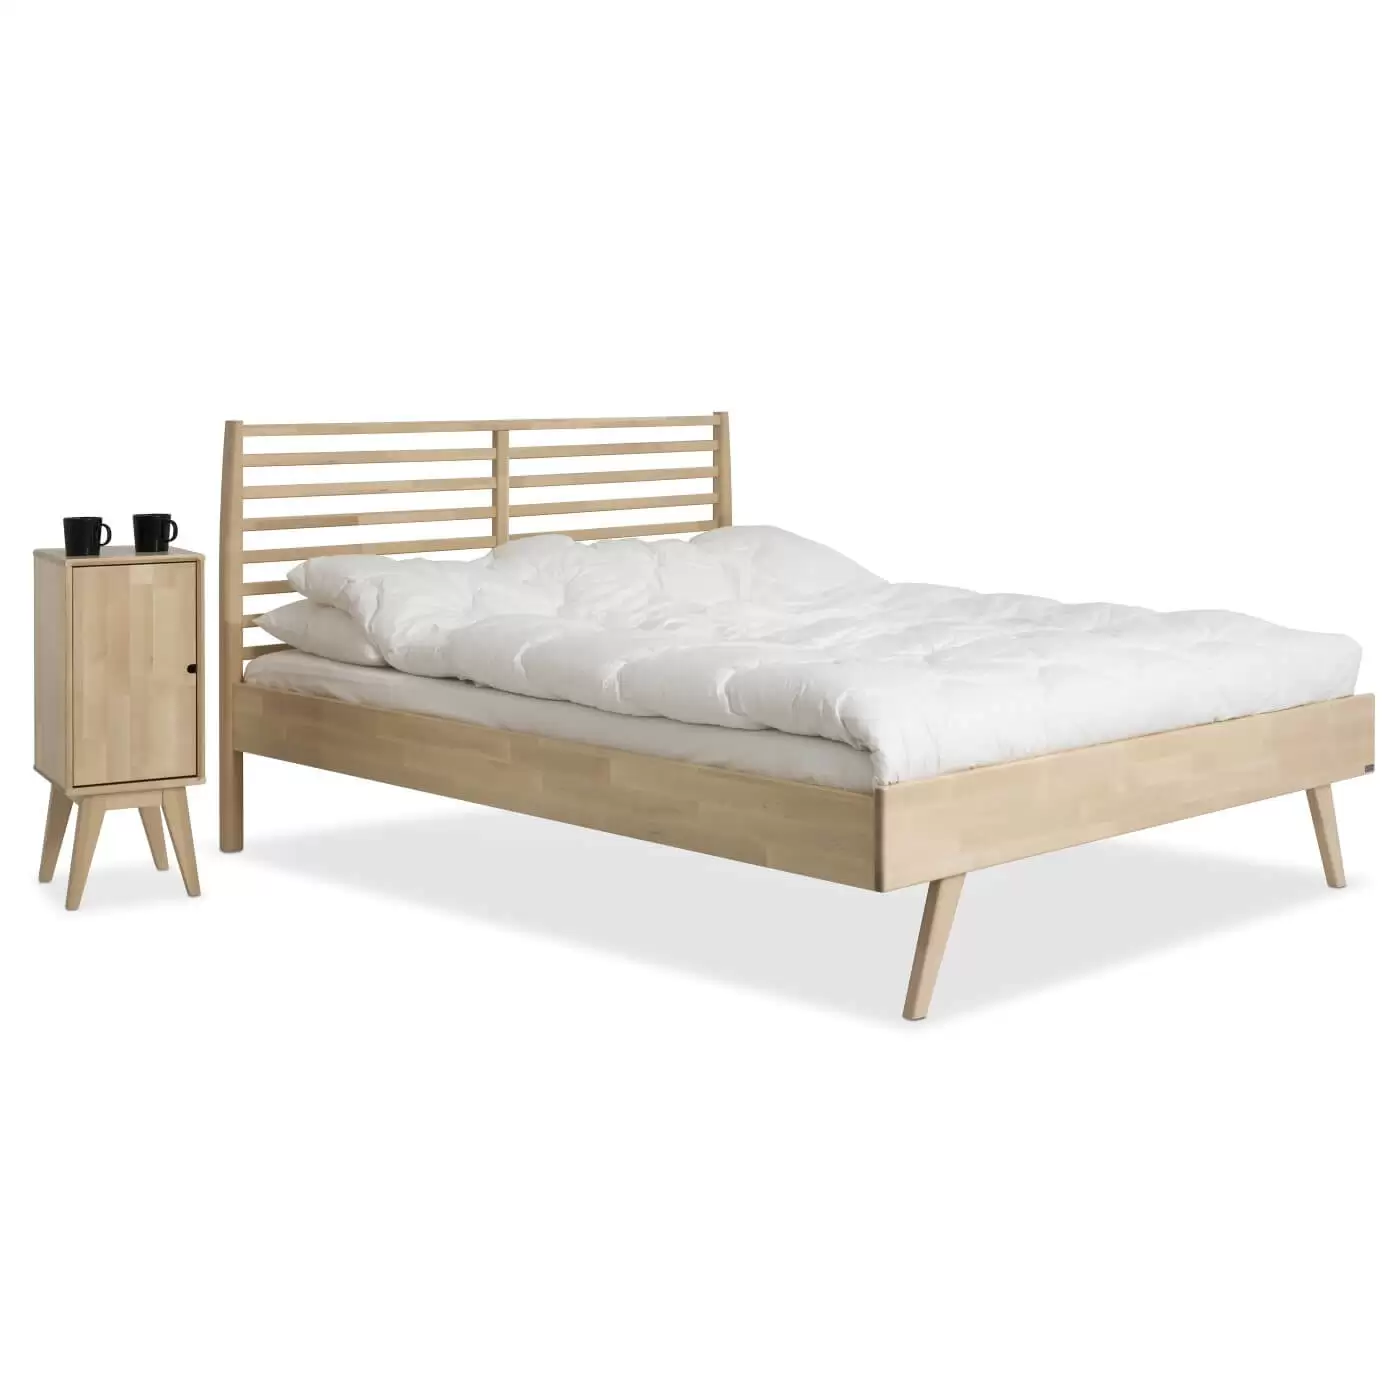 Łóżko drewniane 160x200 NOTTE. Łóżko z drewna z wysokim ażurowym zagłówkiem i szafka nocna drewniana stojące obok siebie. Nowoczesny skandynawski design